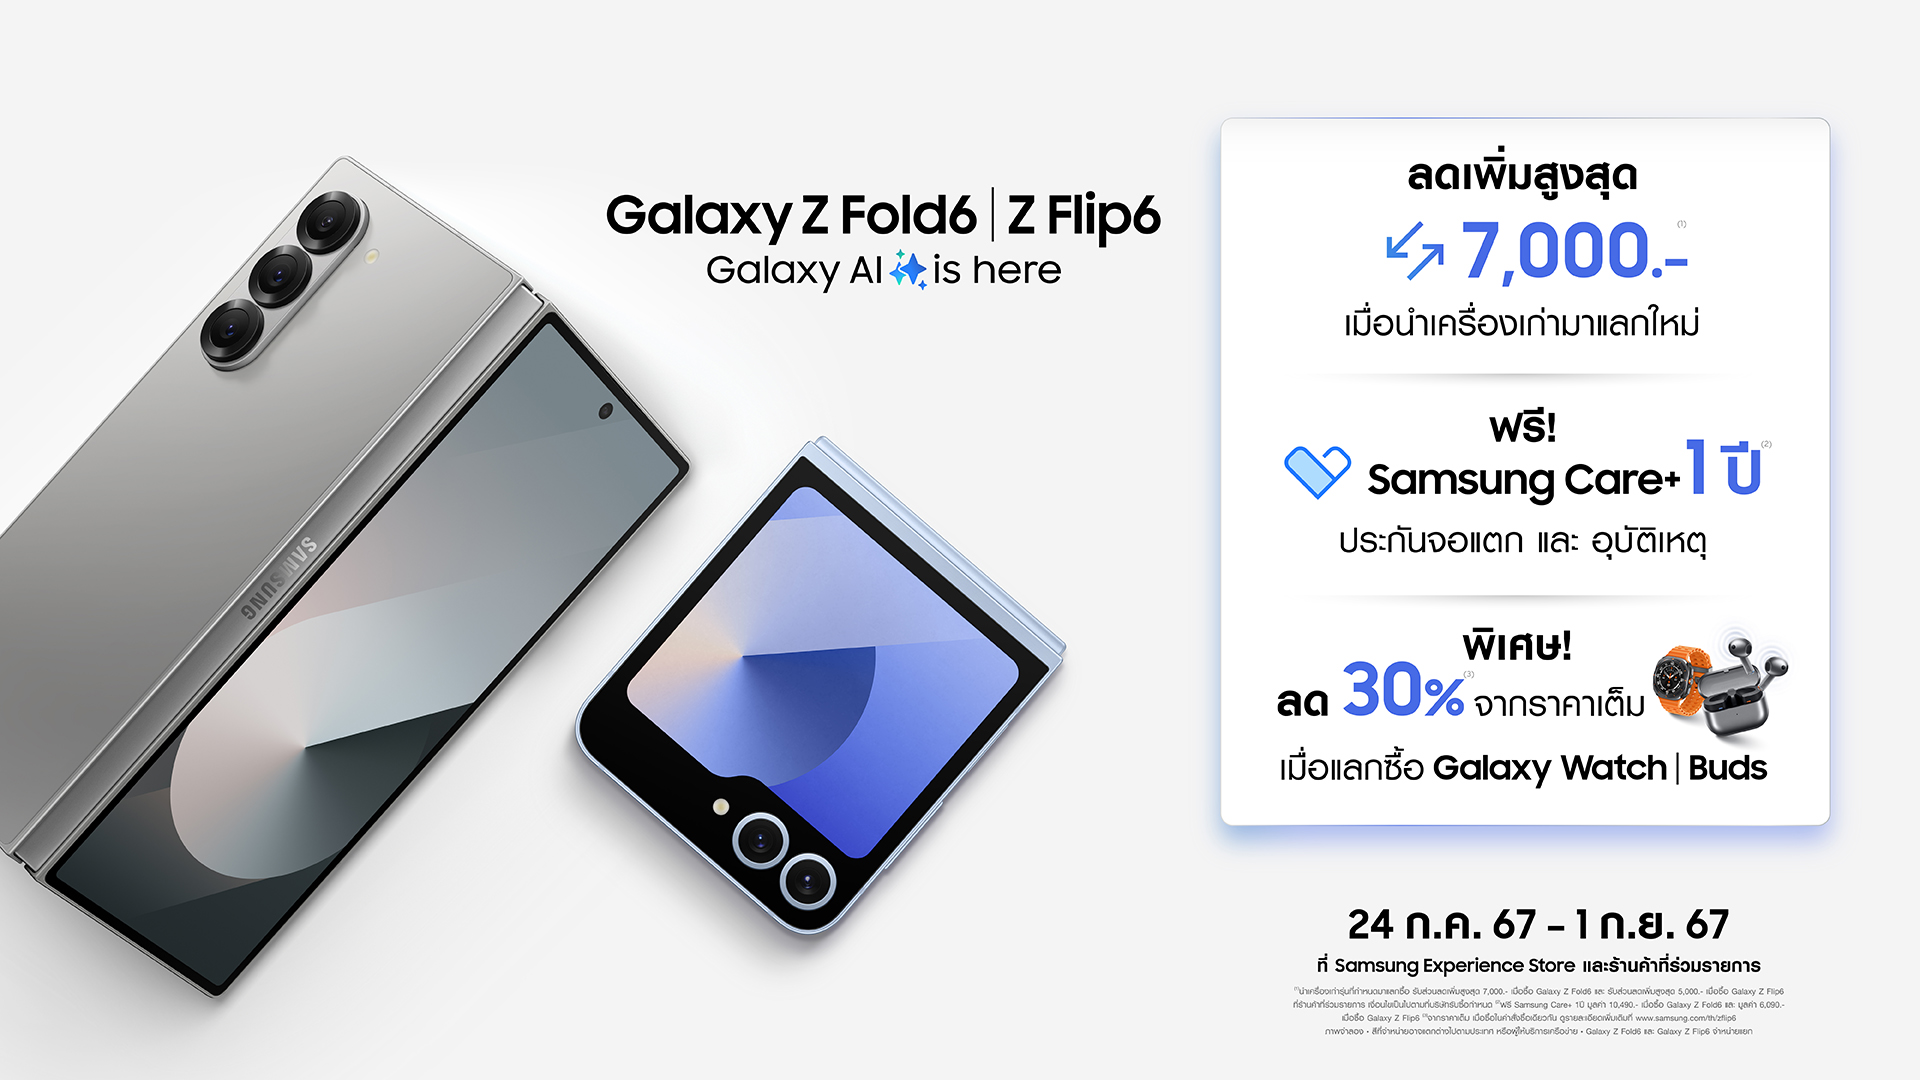 ใหม่! Galaxy Z Fold6 l Z Flip6 สมาร์ทโฟนพับได้รุ่นใหม่ล่าสุดจากซัมซุง วางจำหน่ายอย่างเป็นทางการแล้ว! ซื้อวันนี้ รับสิทธิพิเศษ 3 ต่อ! พร้อม Galaxy Z Fold6, Z Flip6, Watch Ultra, Watch7 และ Buds3 series